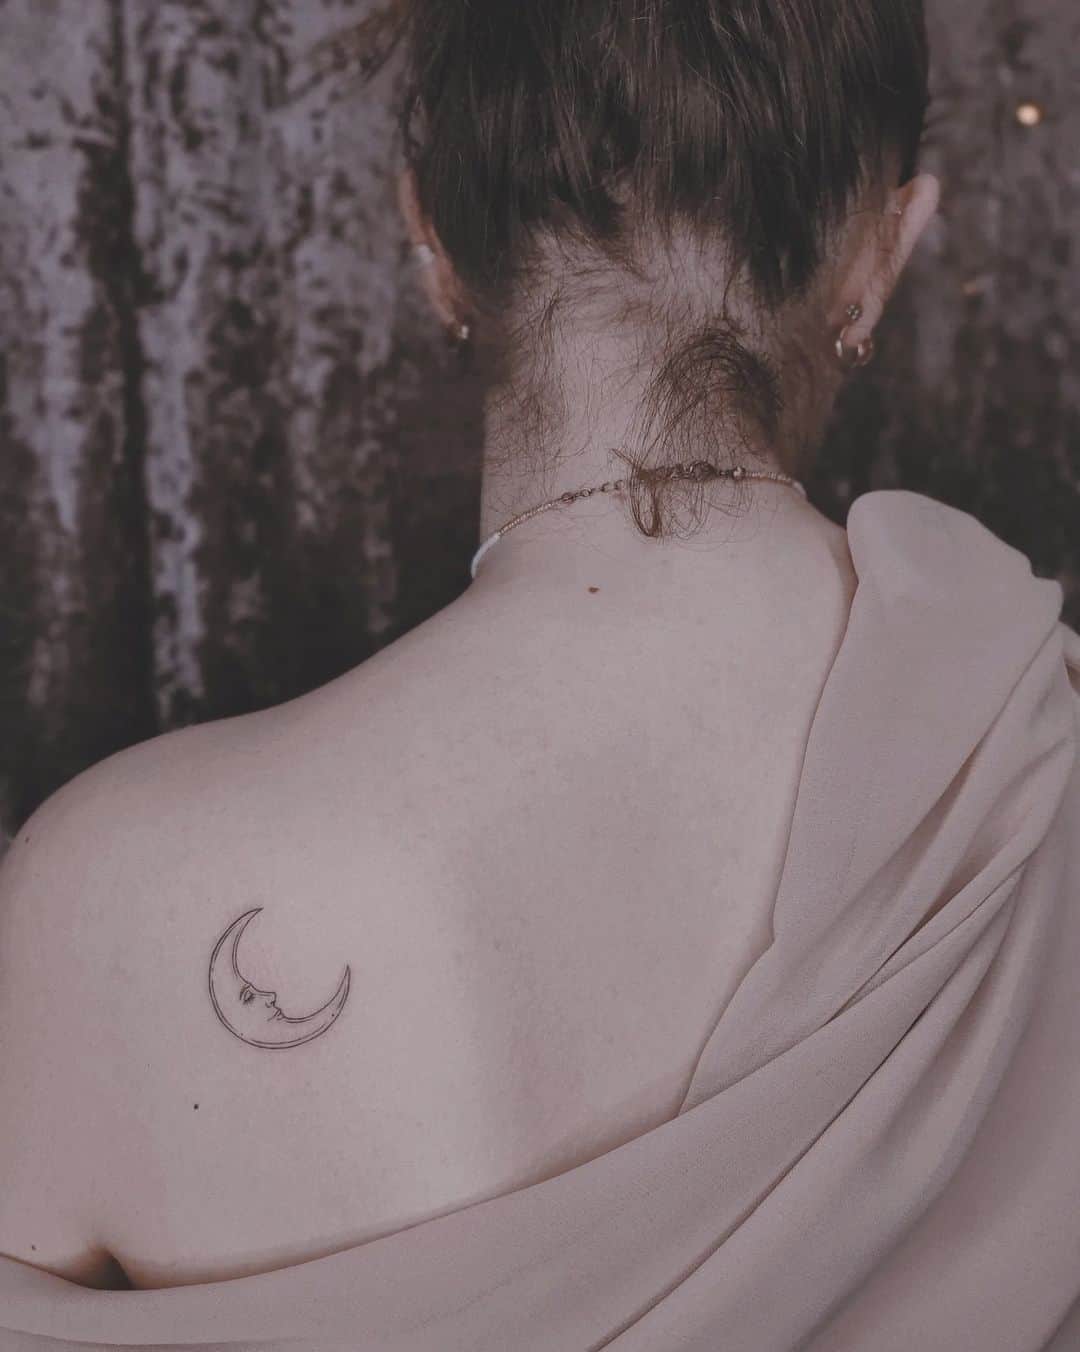 Fineline moon tattoo by